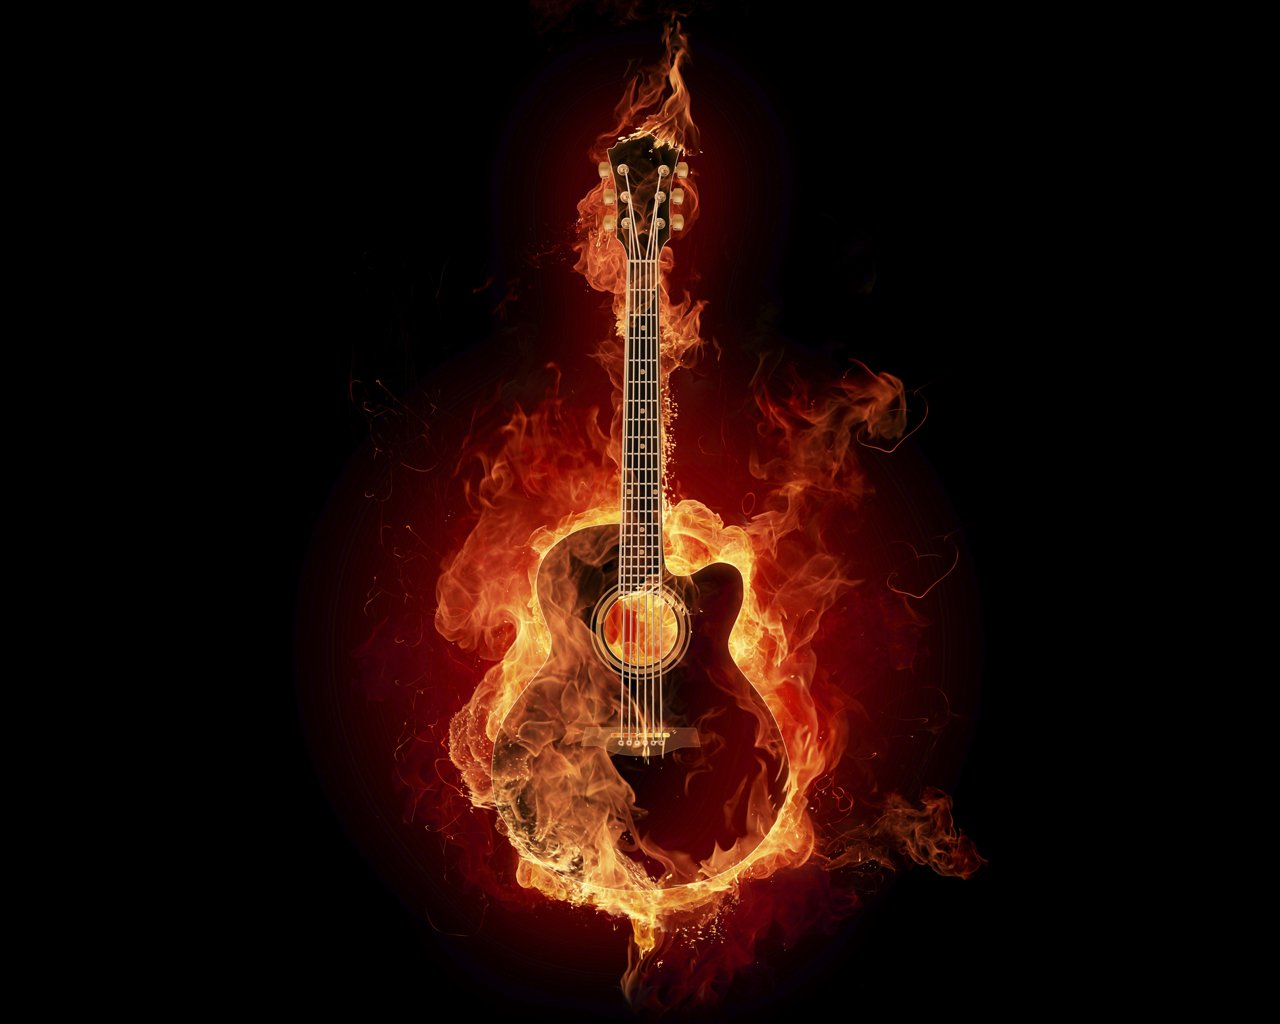 feuertapete,gitarre,gezupfte saiteninstrumente,musikinstrument,flamme,gitarrist